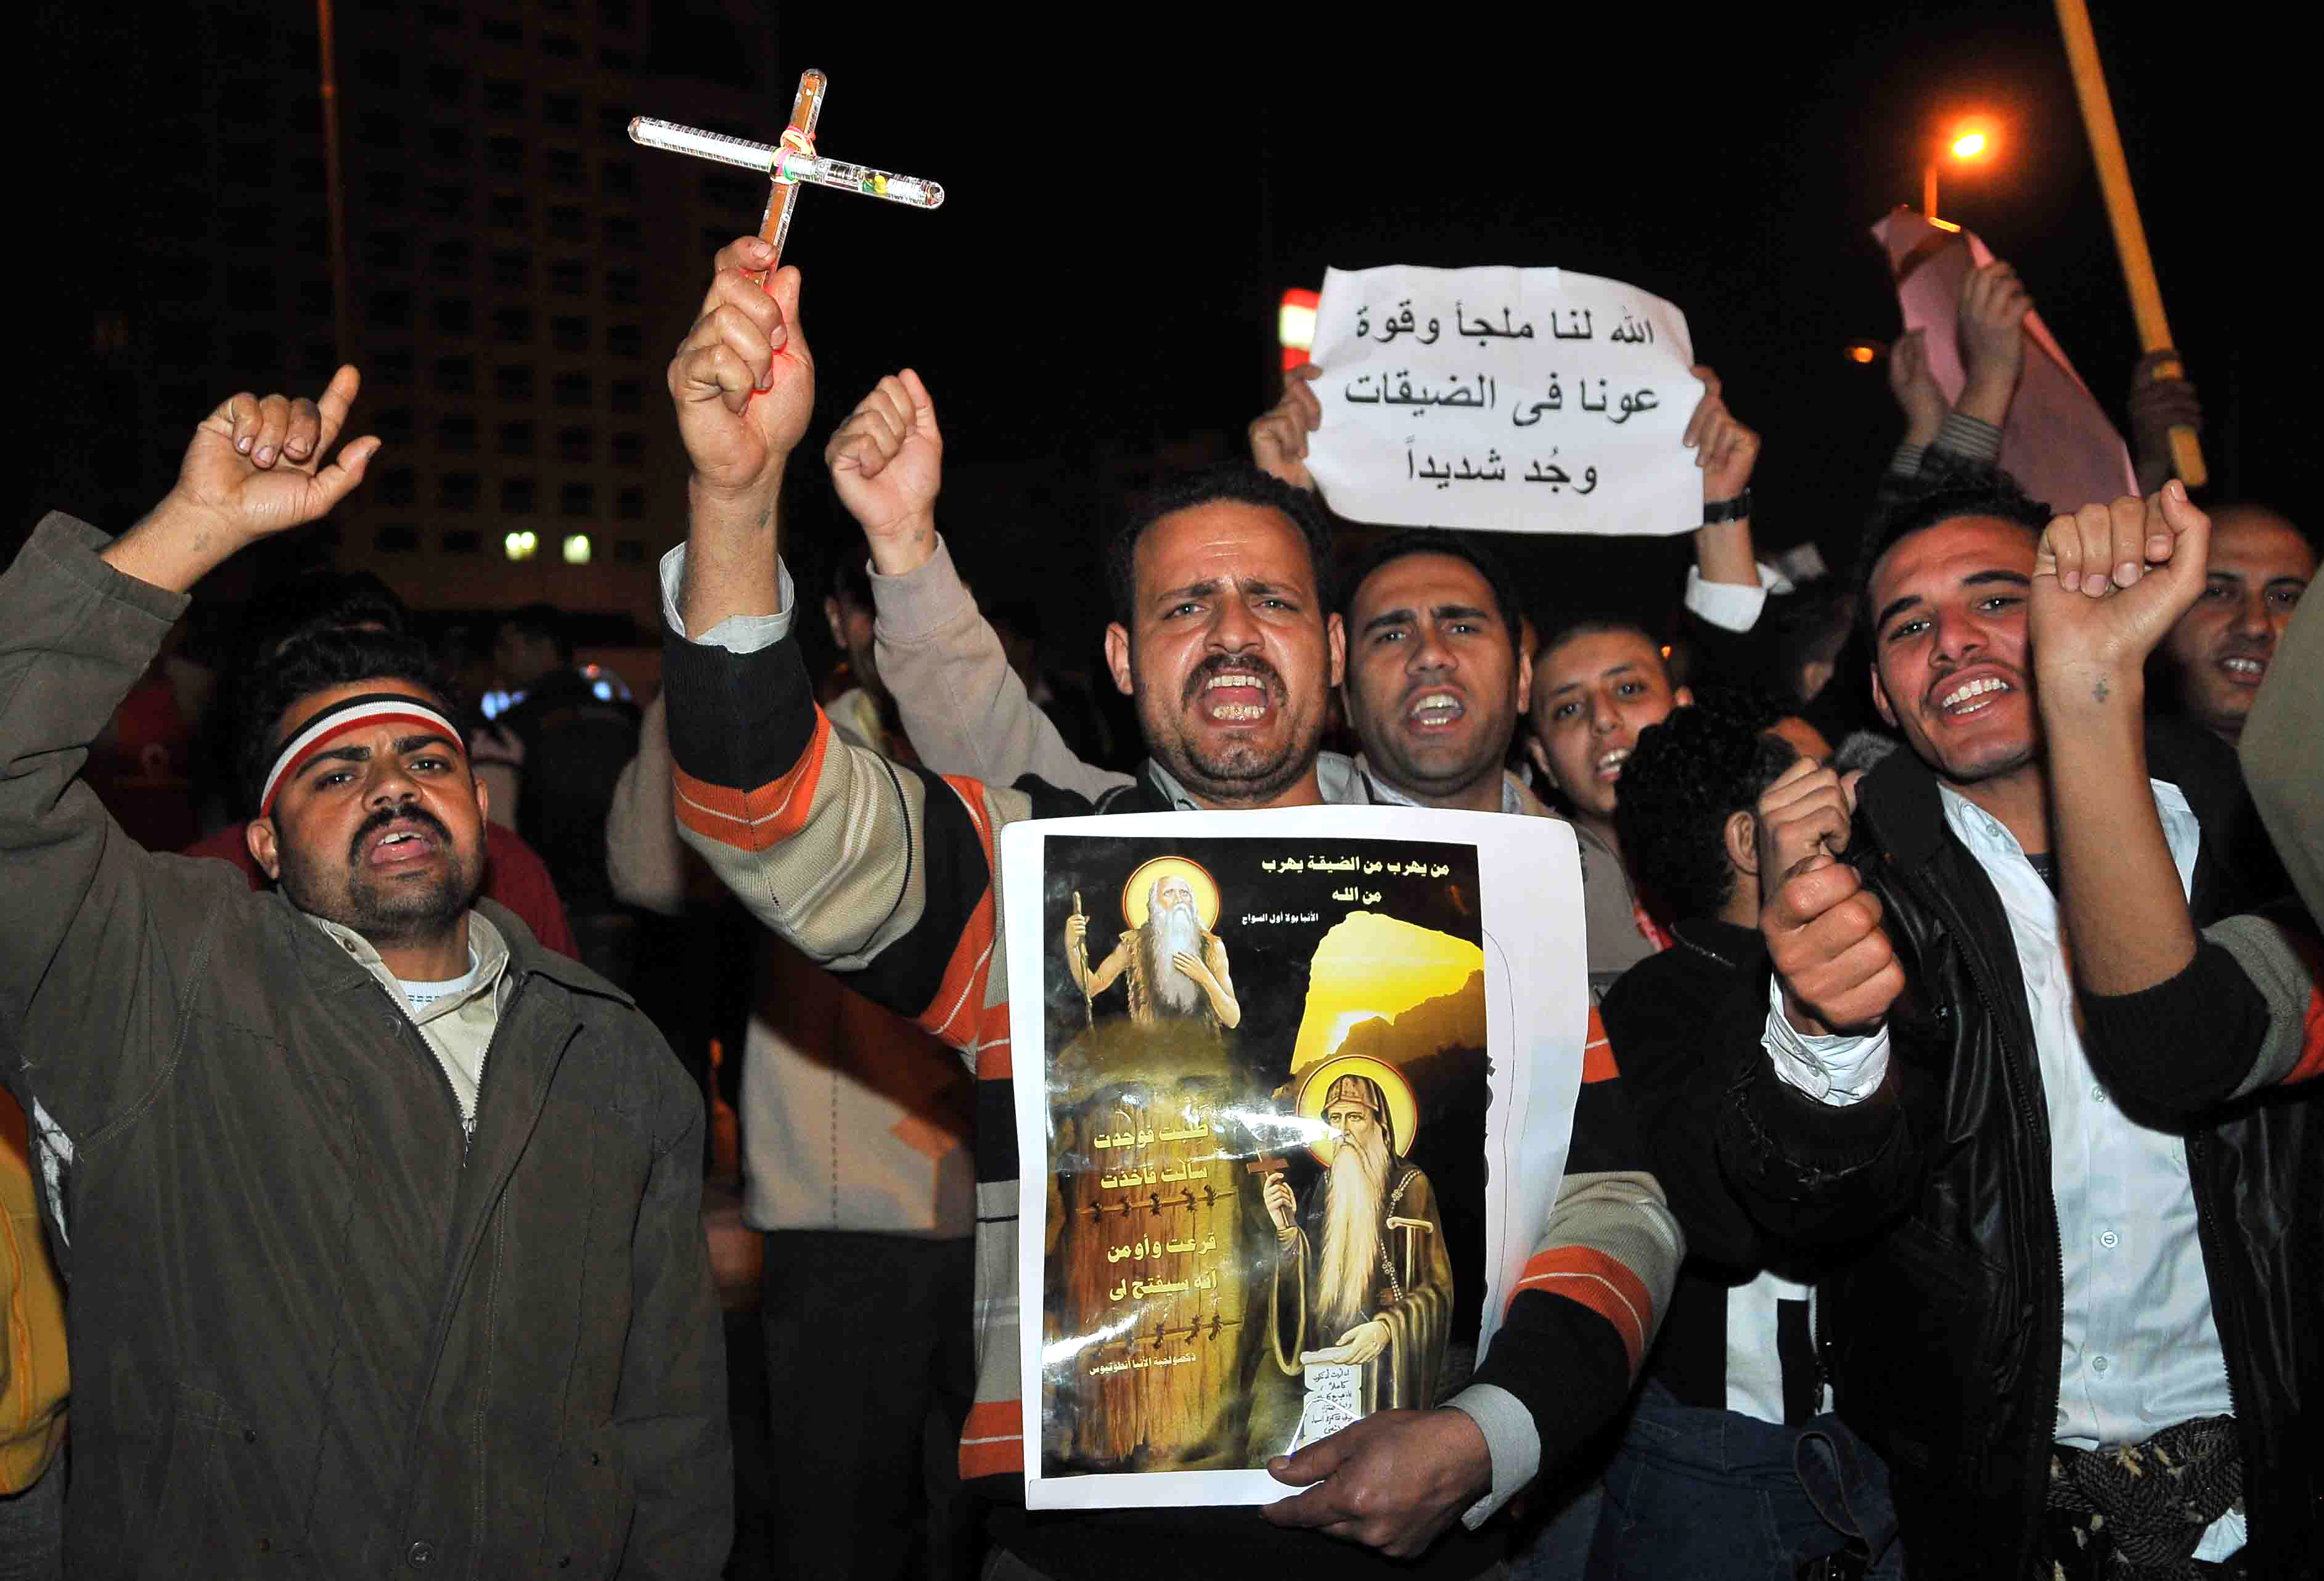 Revolution, Kopter, Egypten, Muslimer, våld